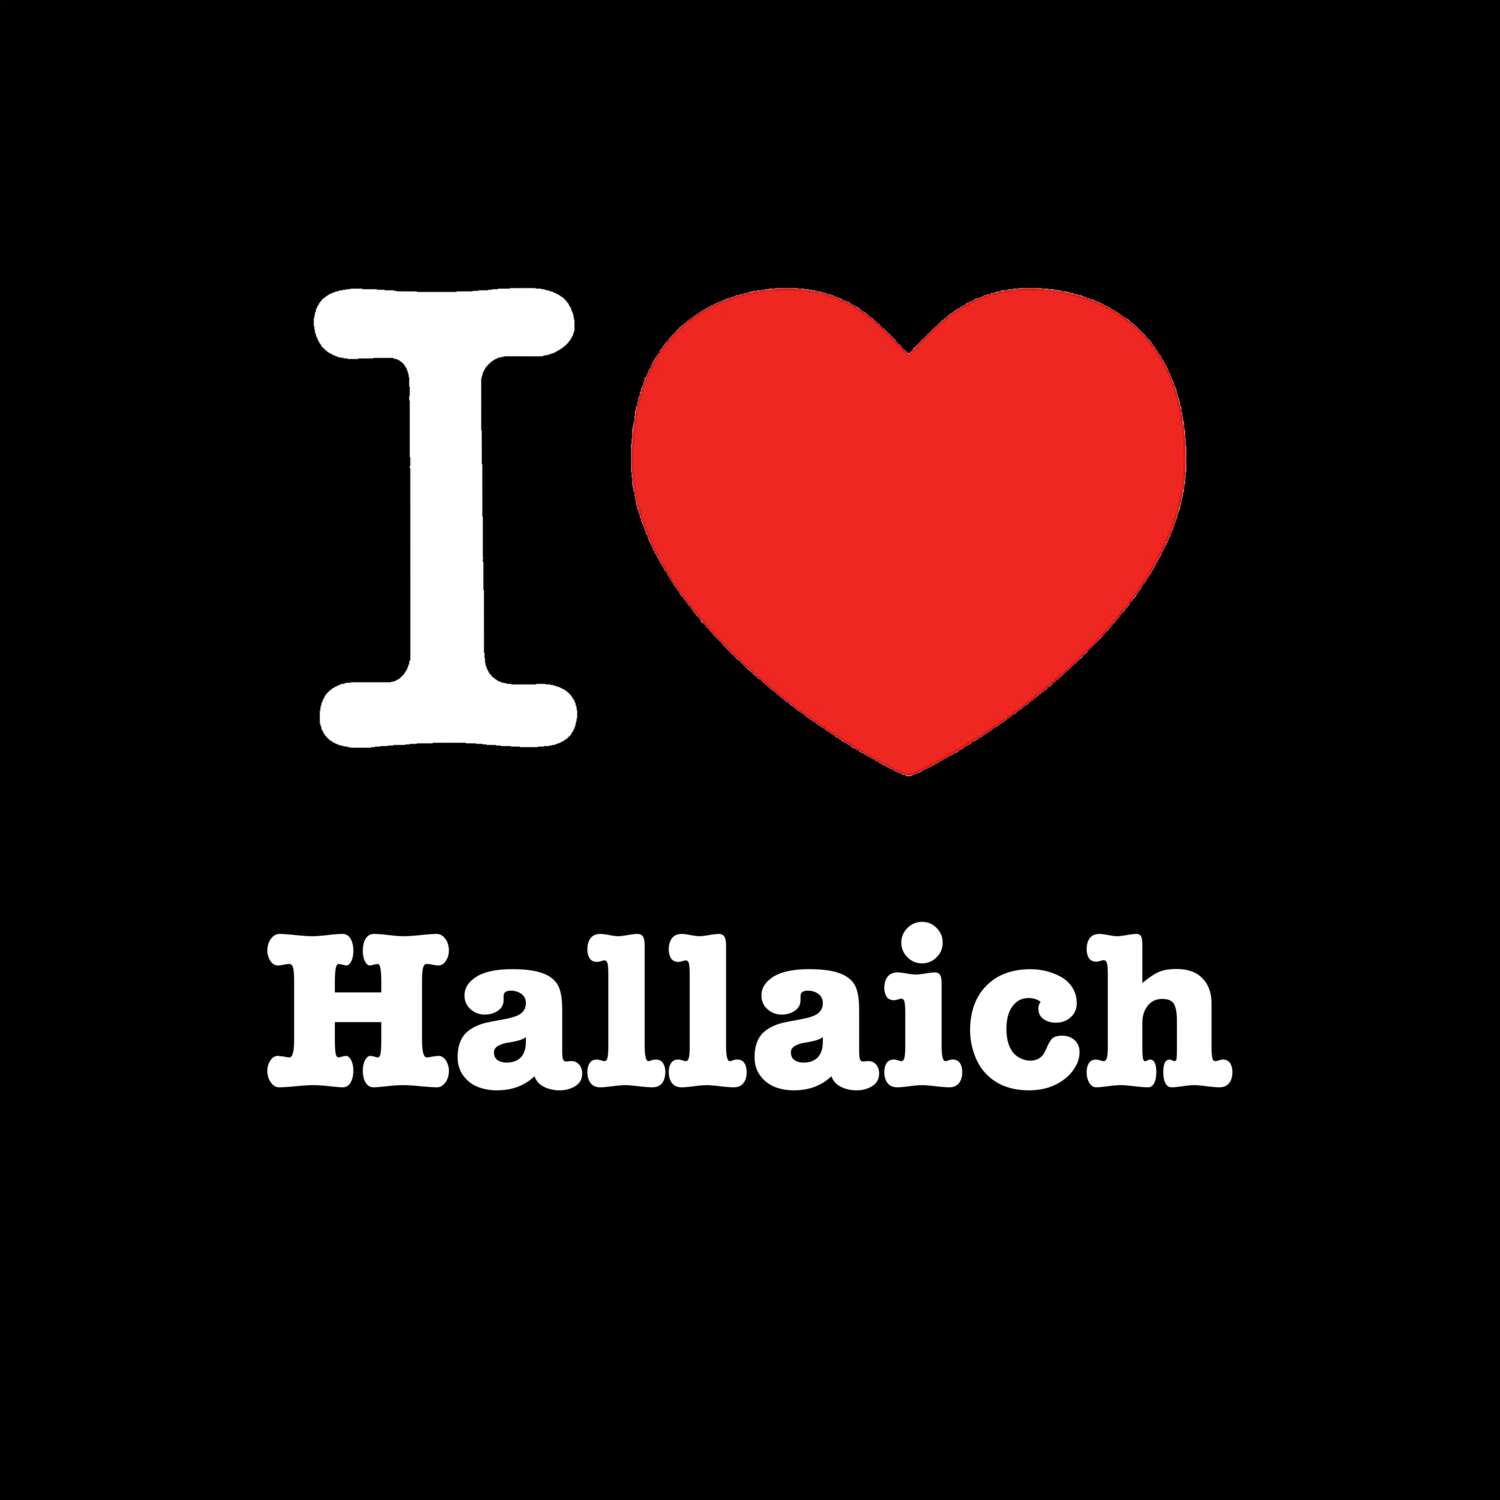 Hallaich T-Shirt »I love«